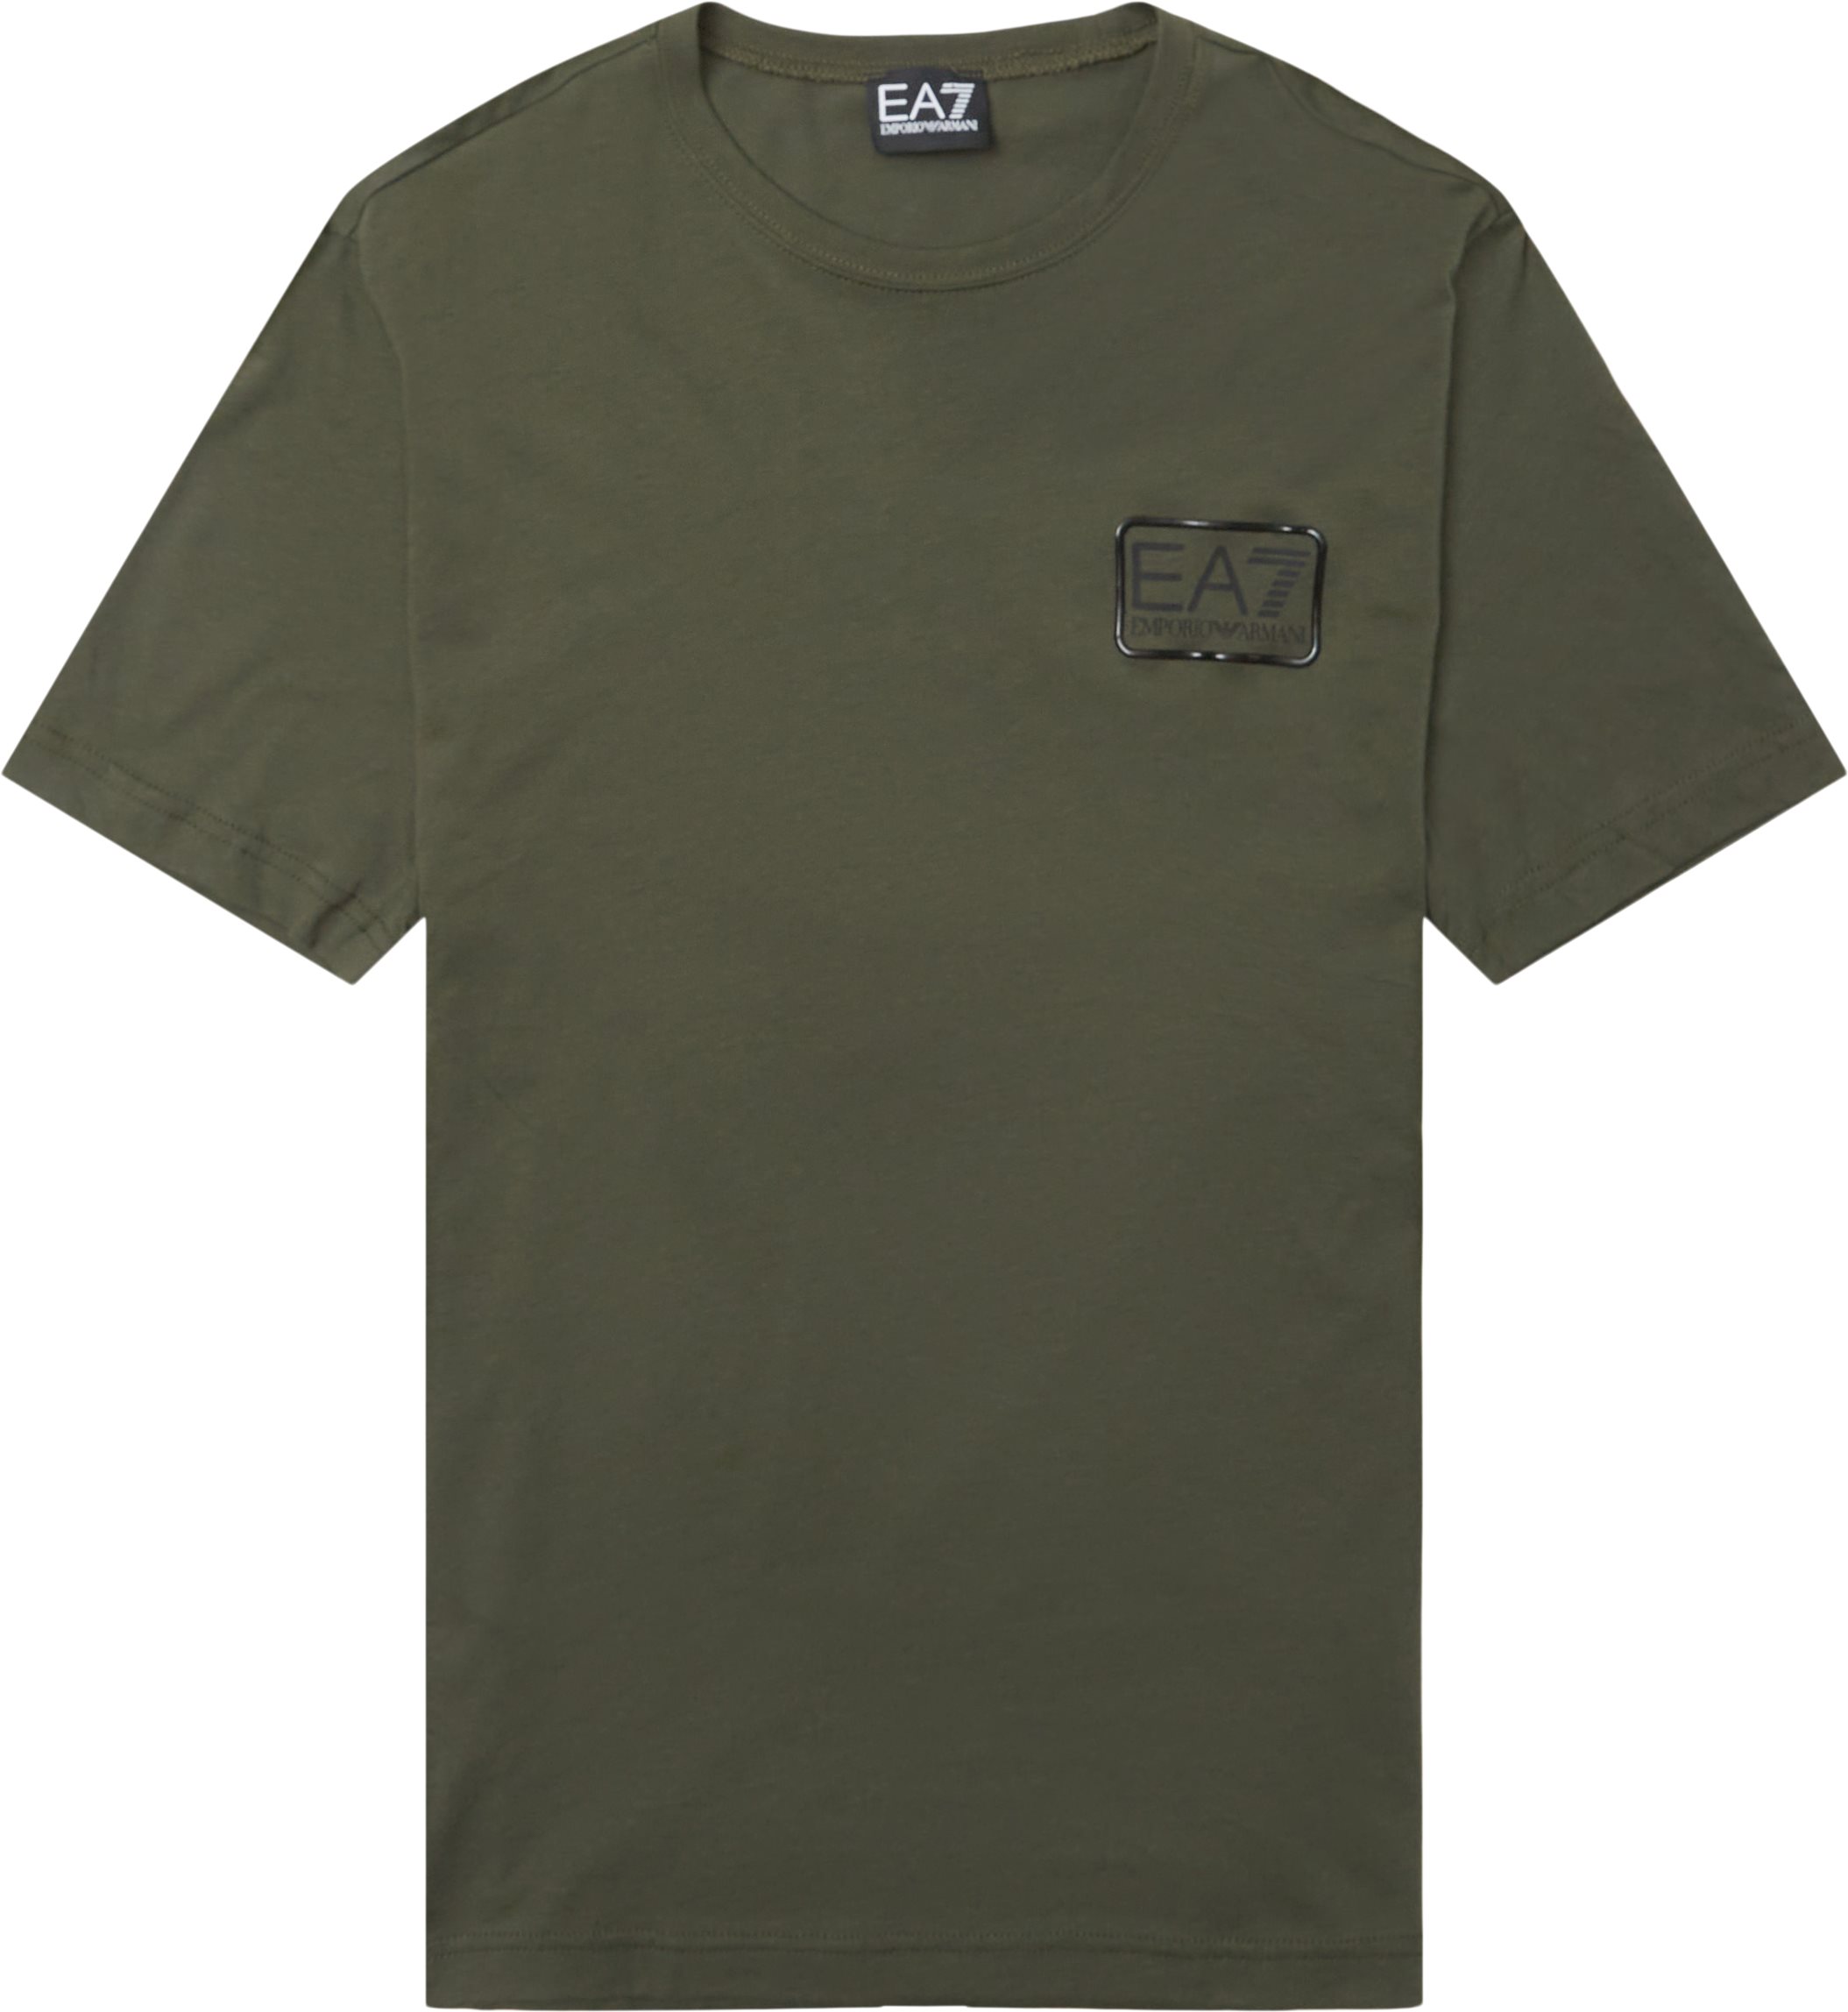 Pjm9z-3lpt05 - T-shirts - Regular fit - Army